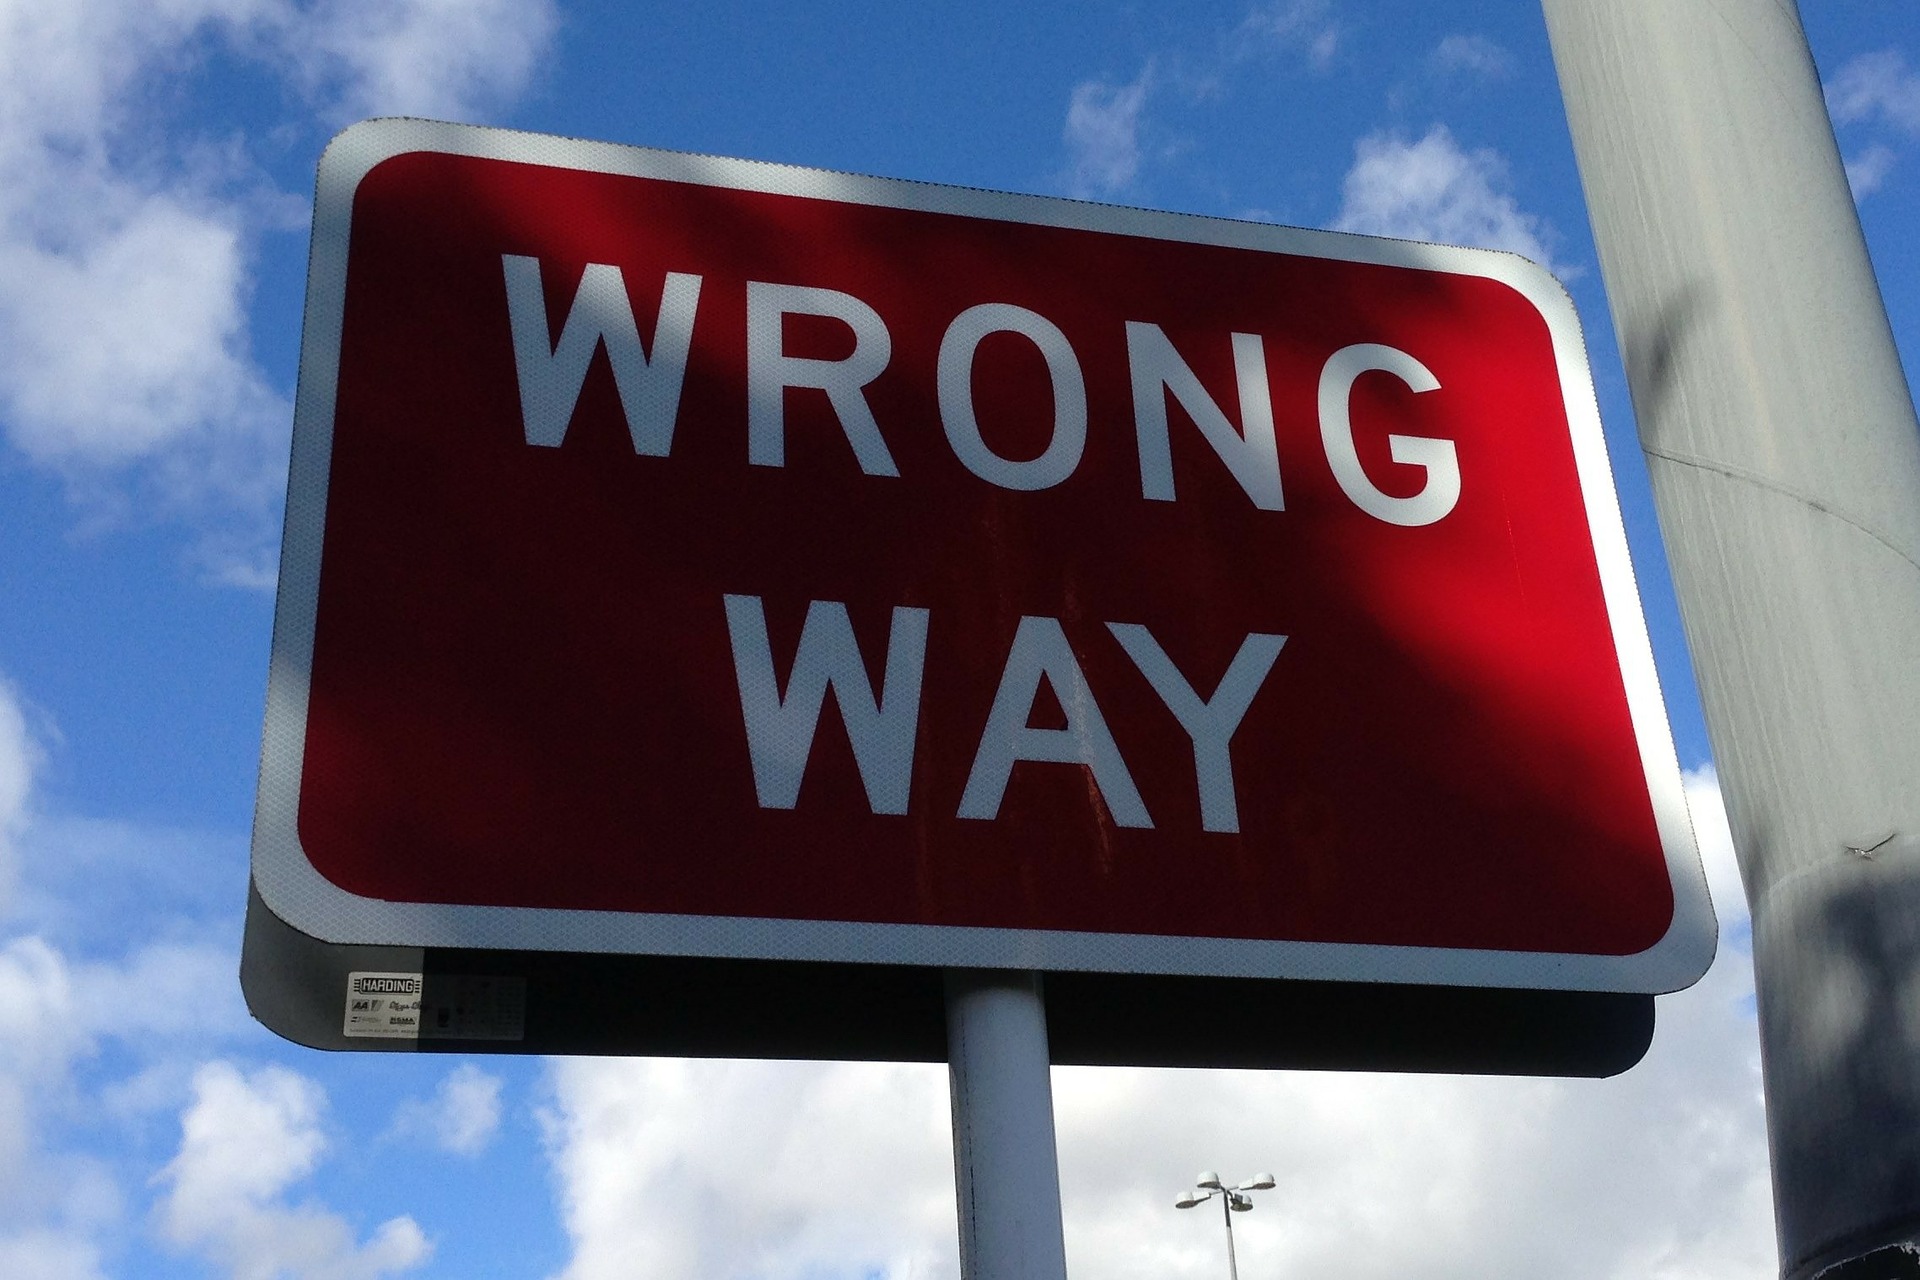 wrong-way-167535_1920